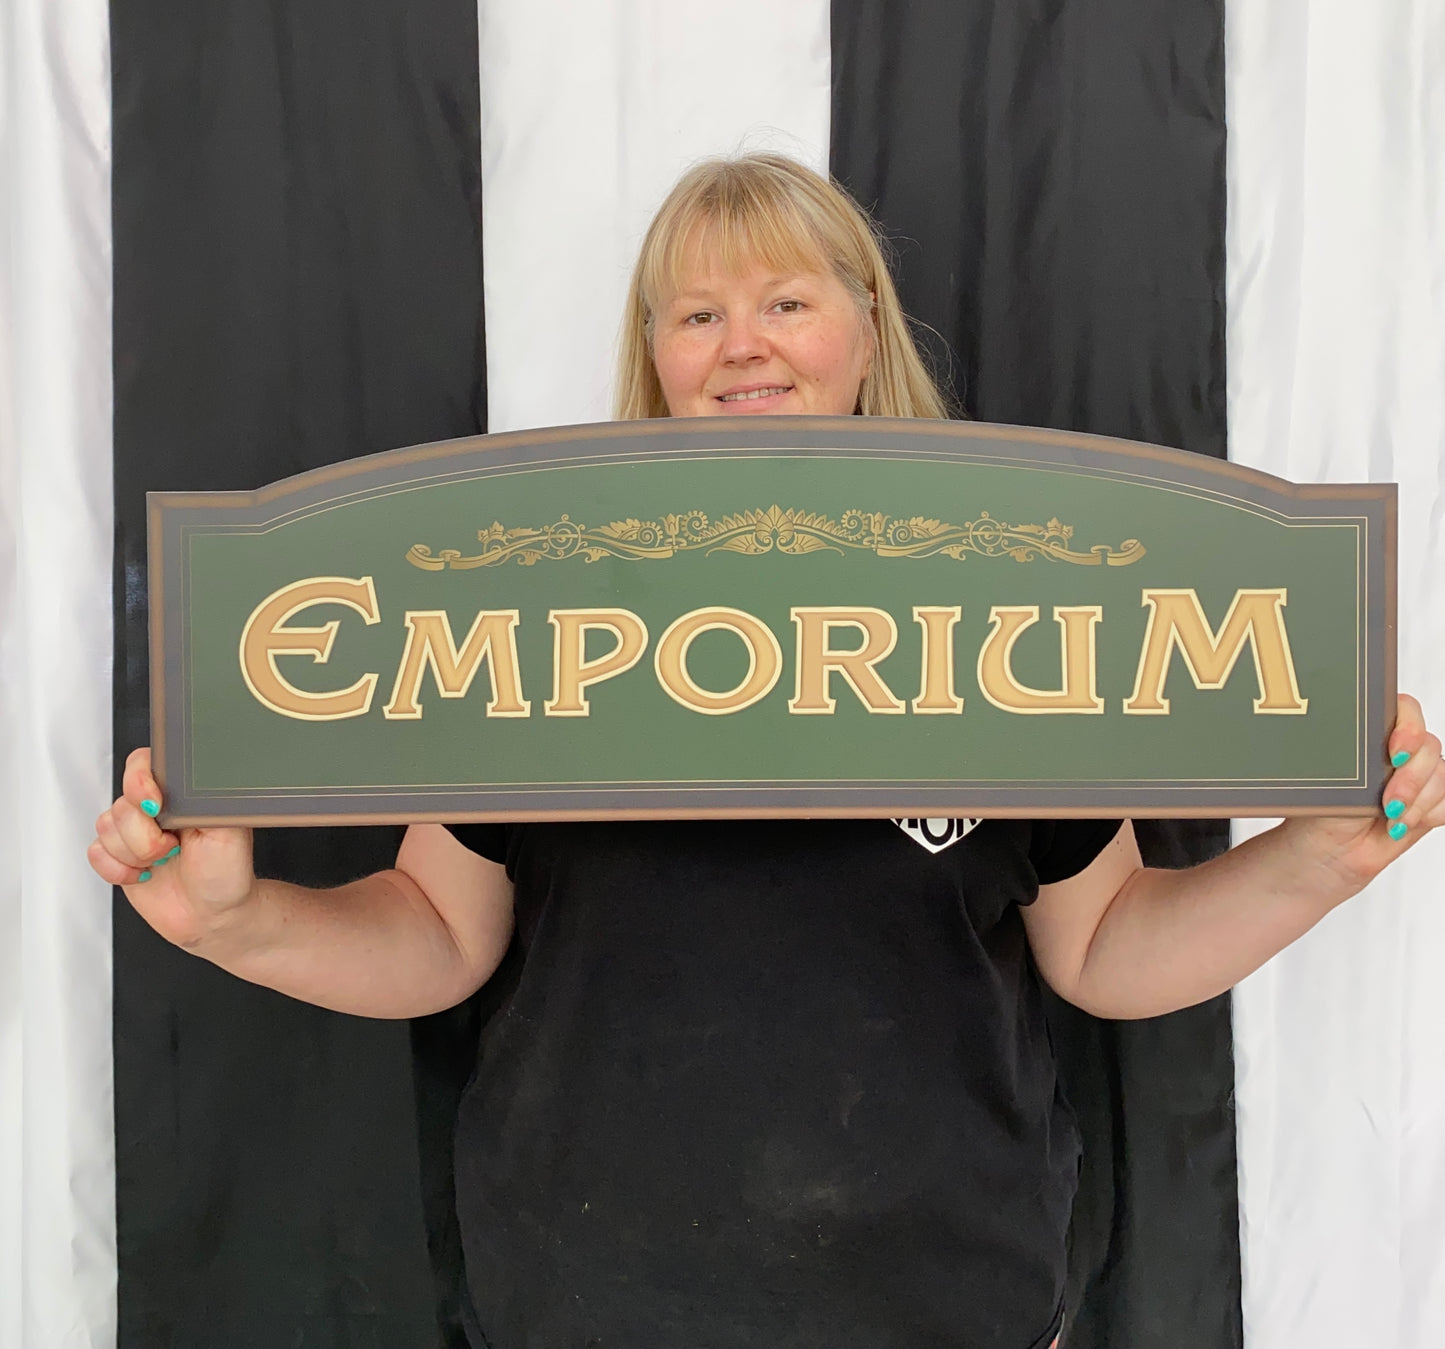 Traditional Emporium Sign